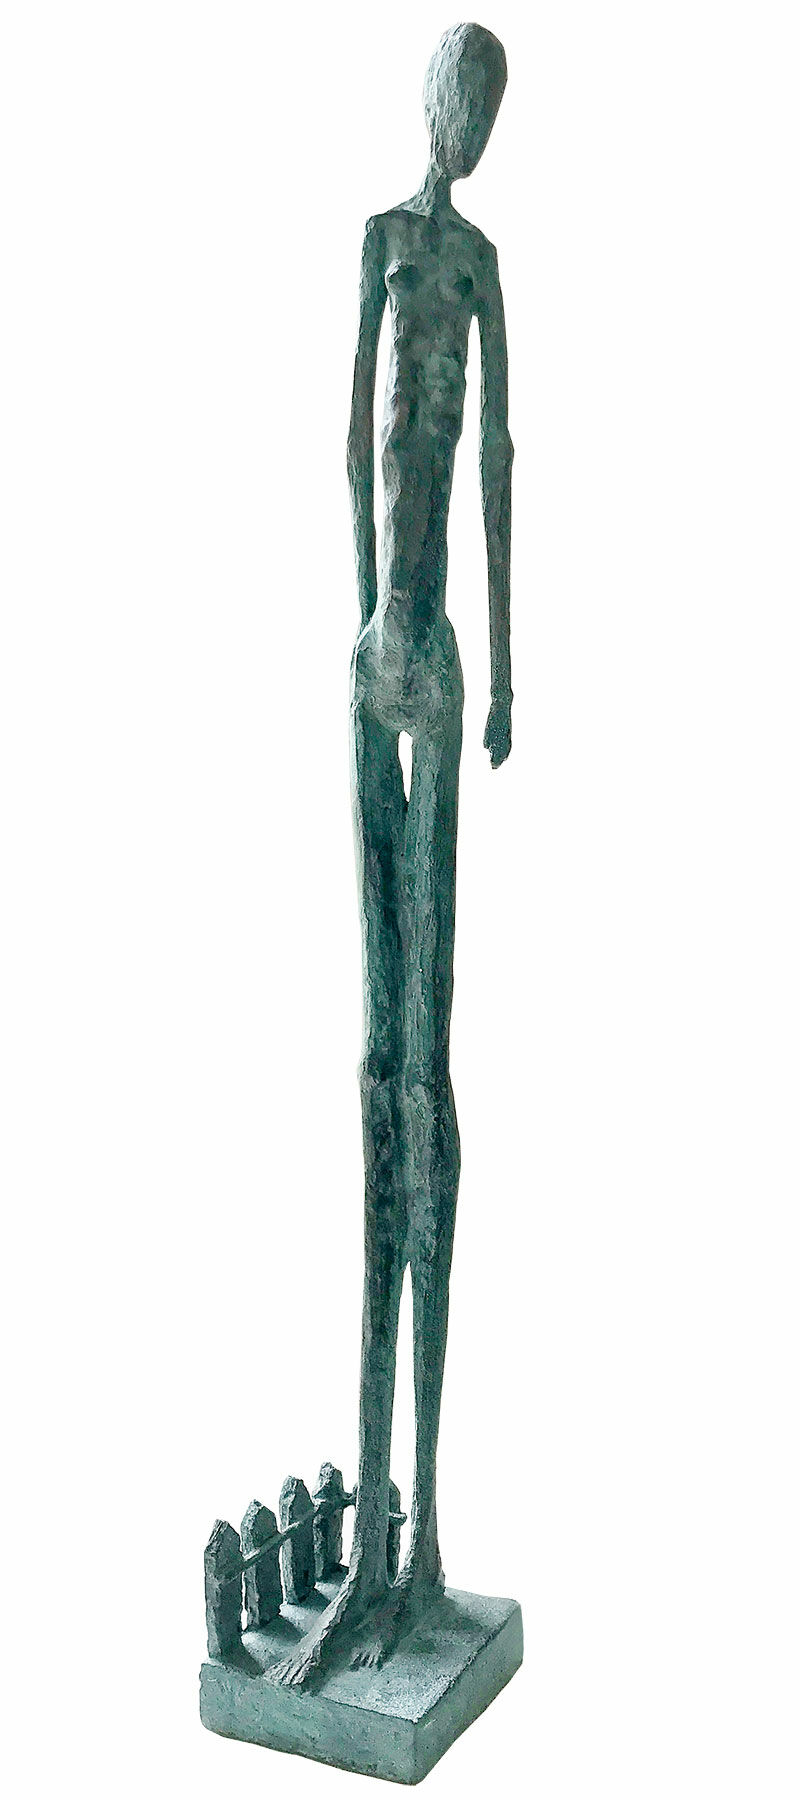 Sculpture "Woman in the Garden" (2021), bronze by Sibylle Waldhausen